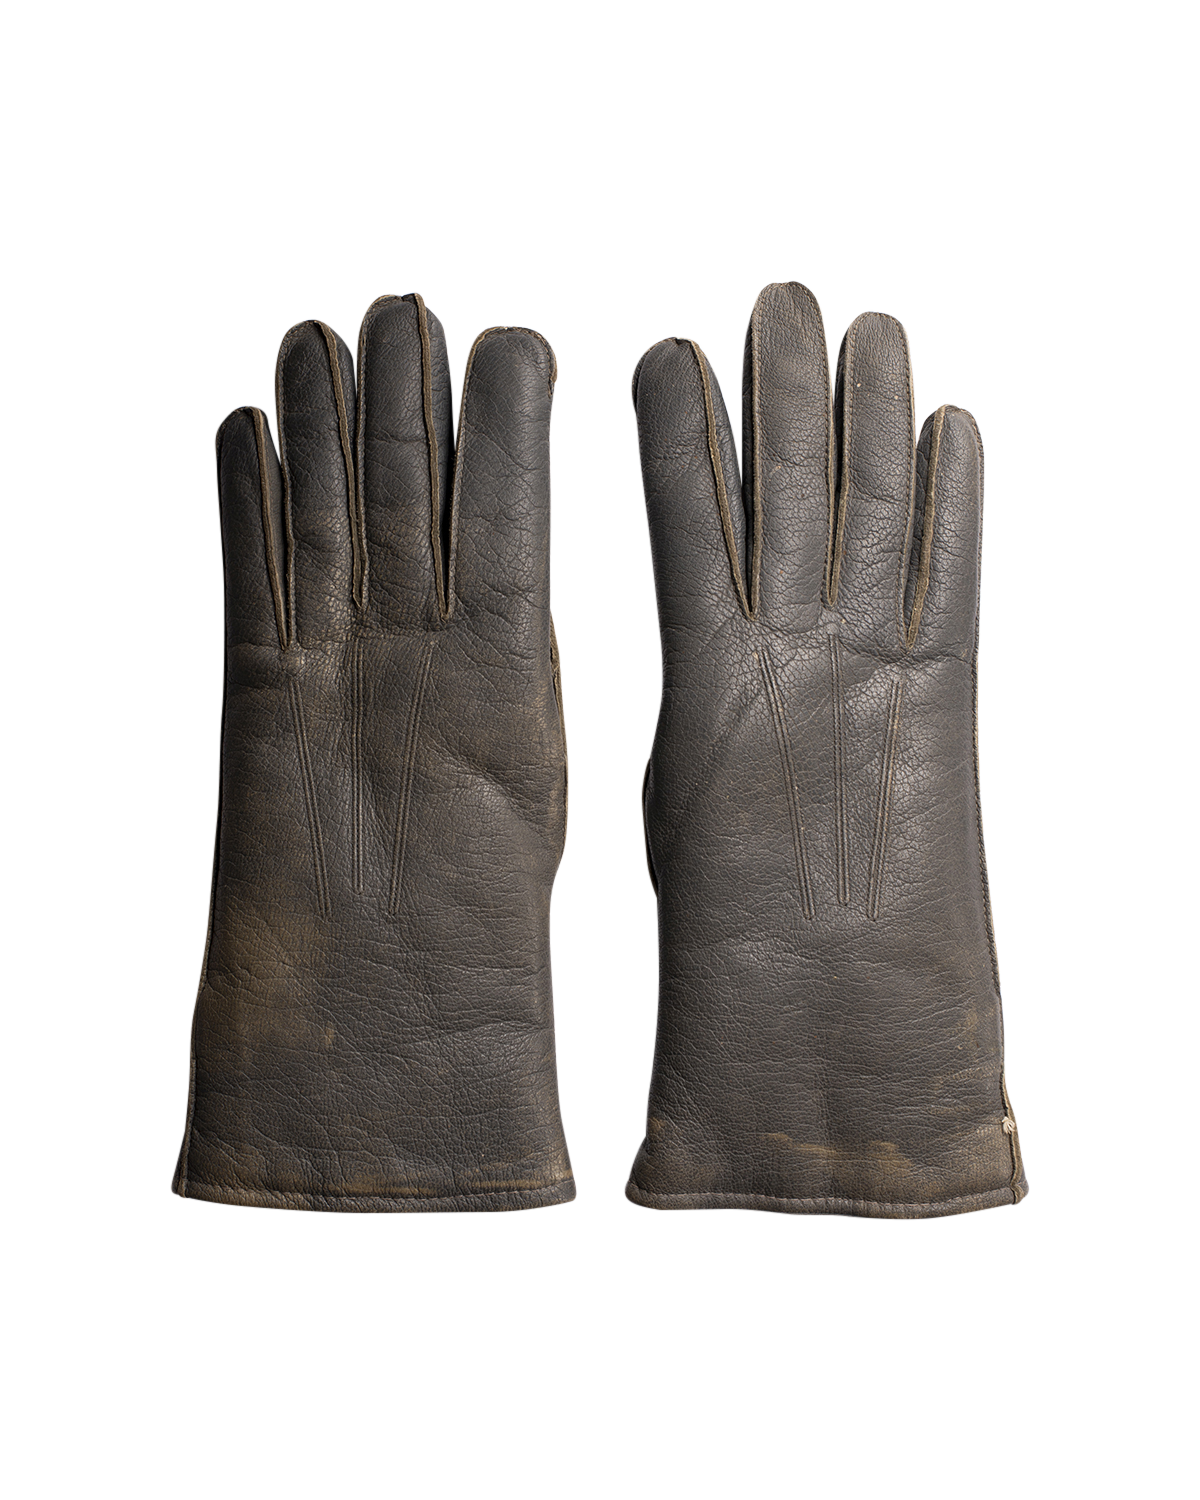 Vintage German Leather/Fur-Lined Gloves S